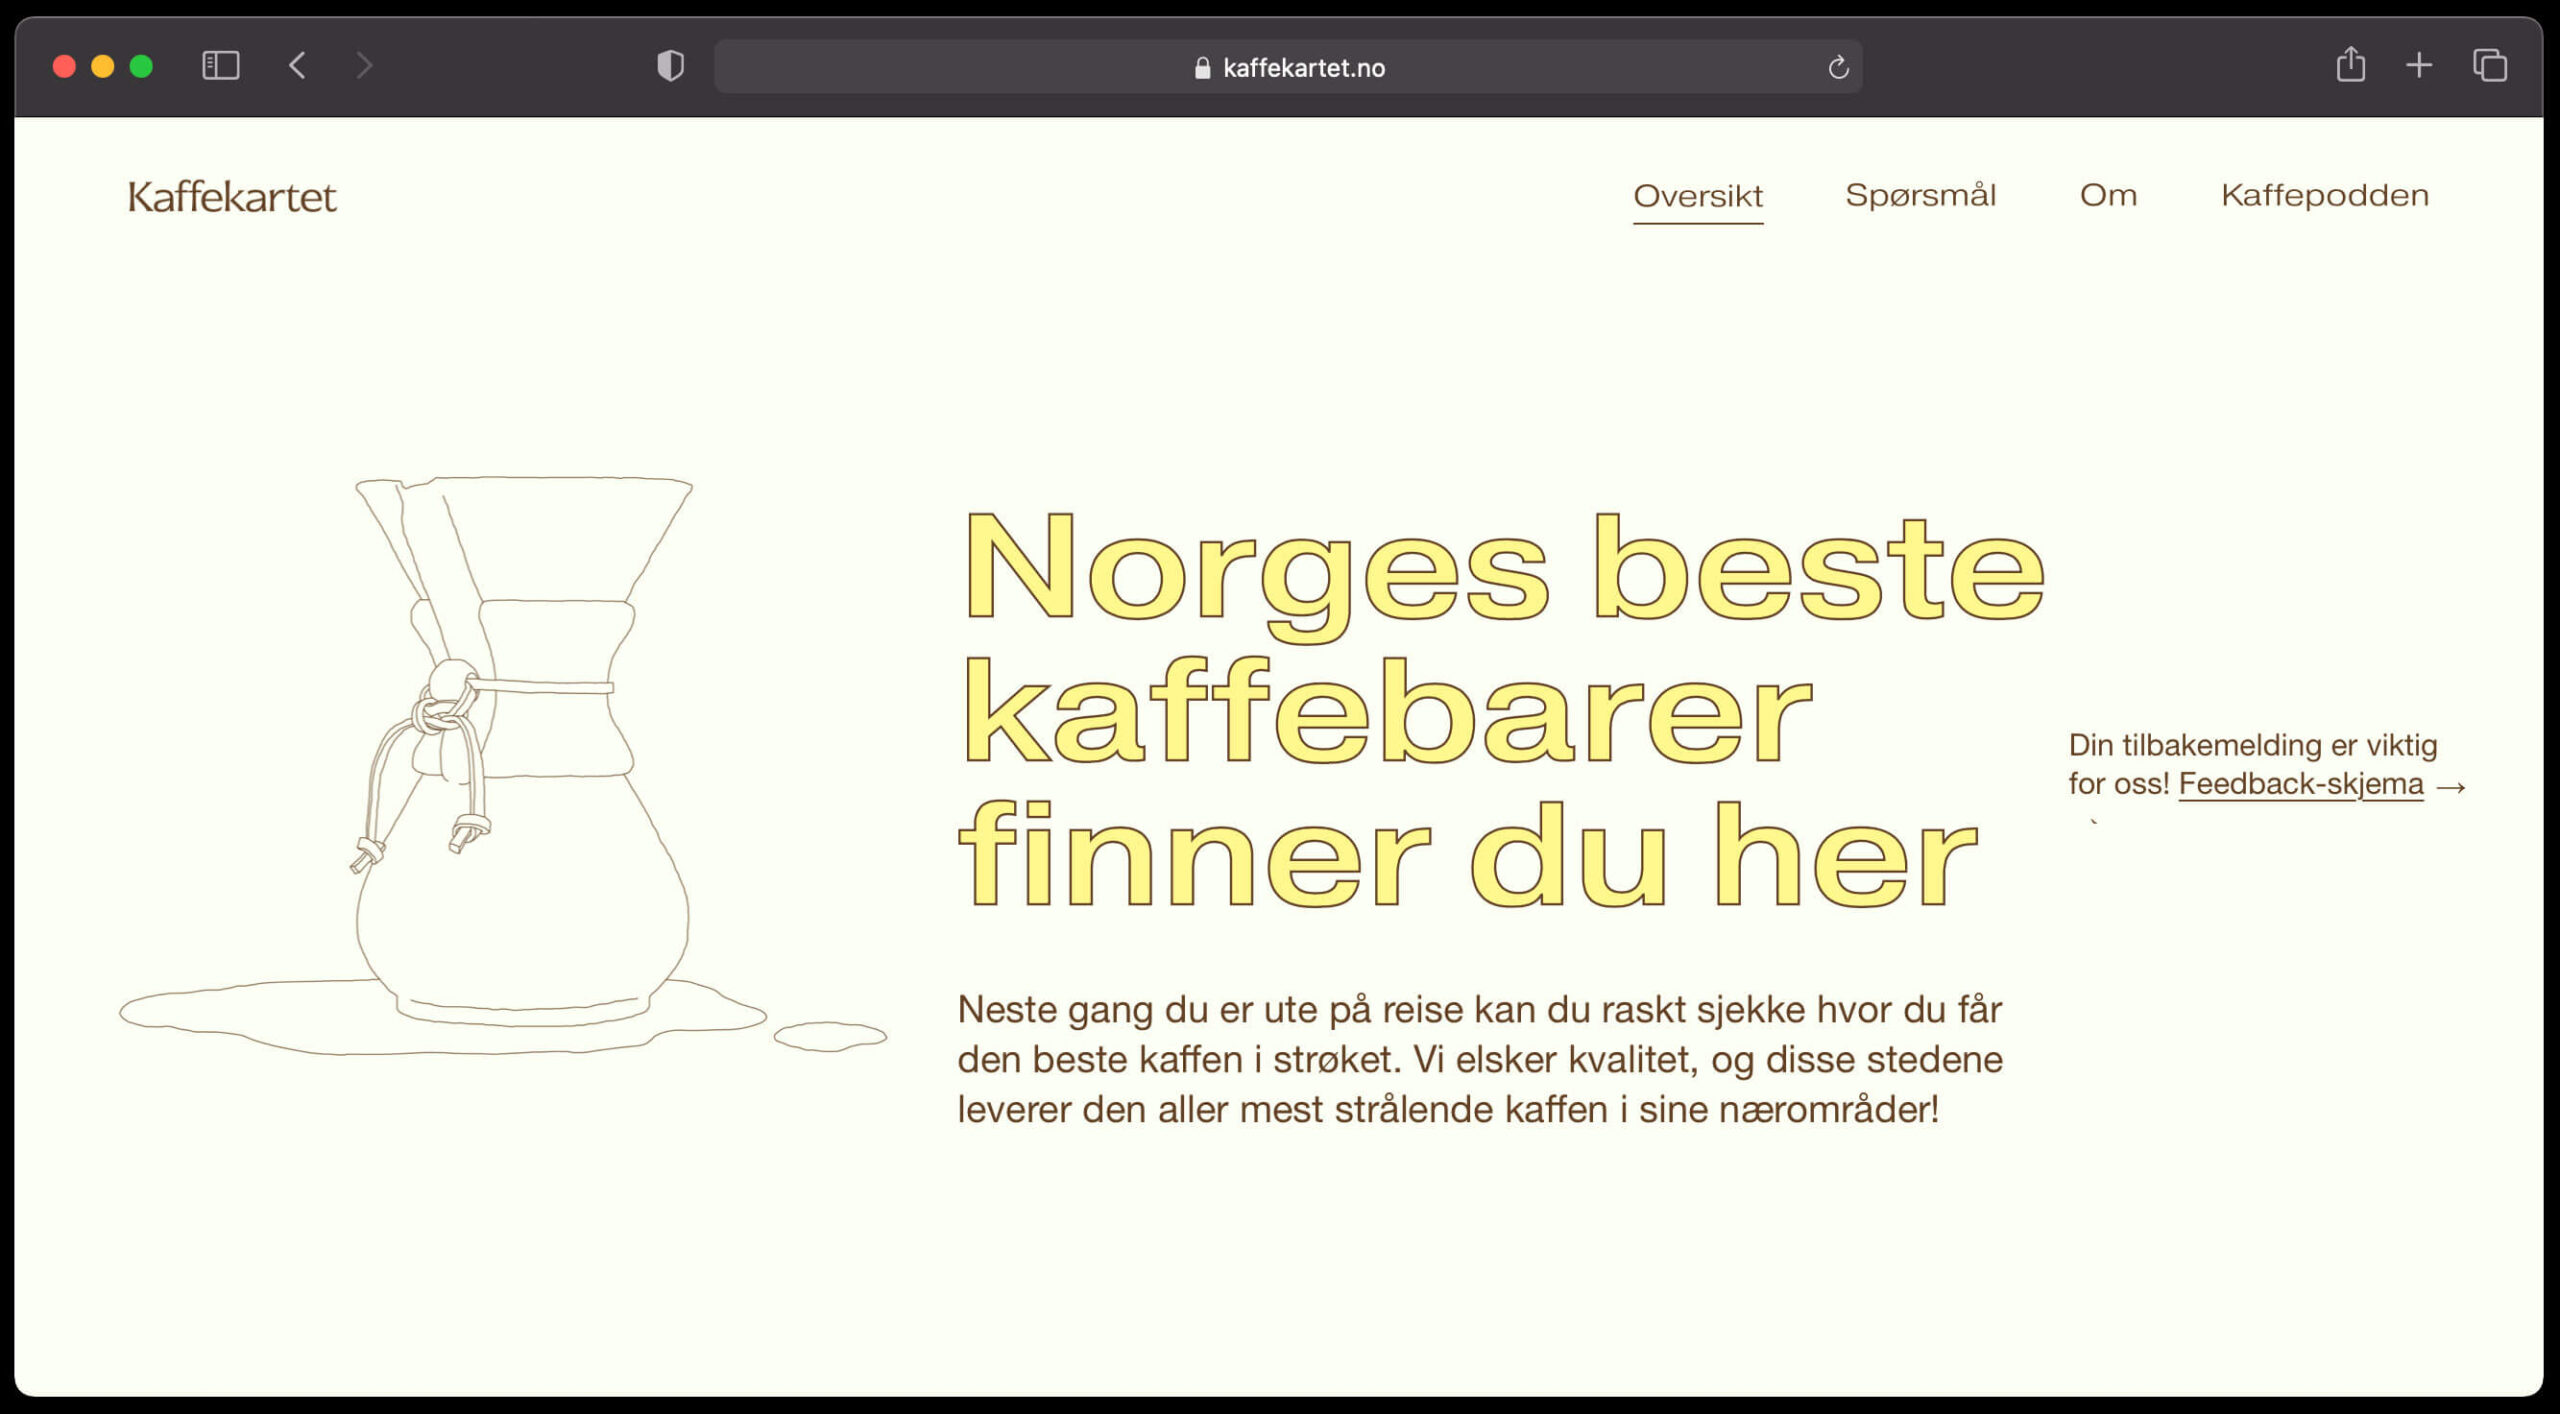 Main page at Kaffekartet website.